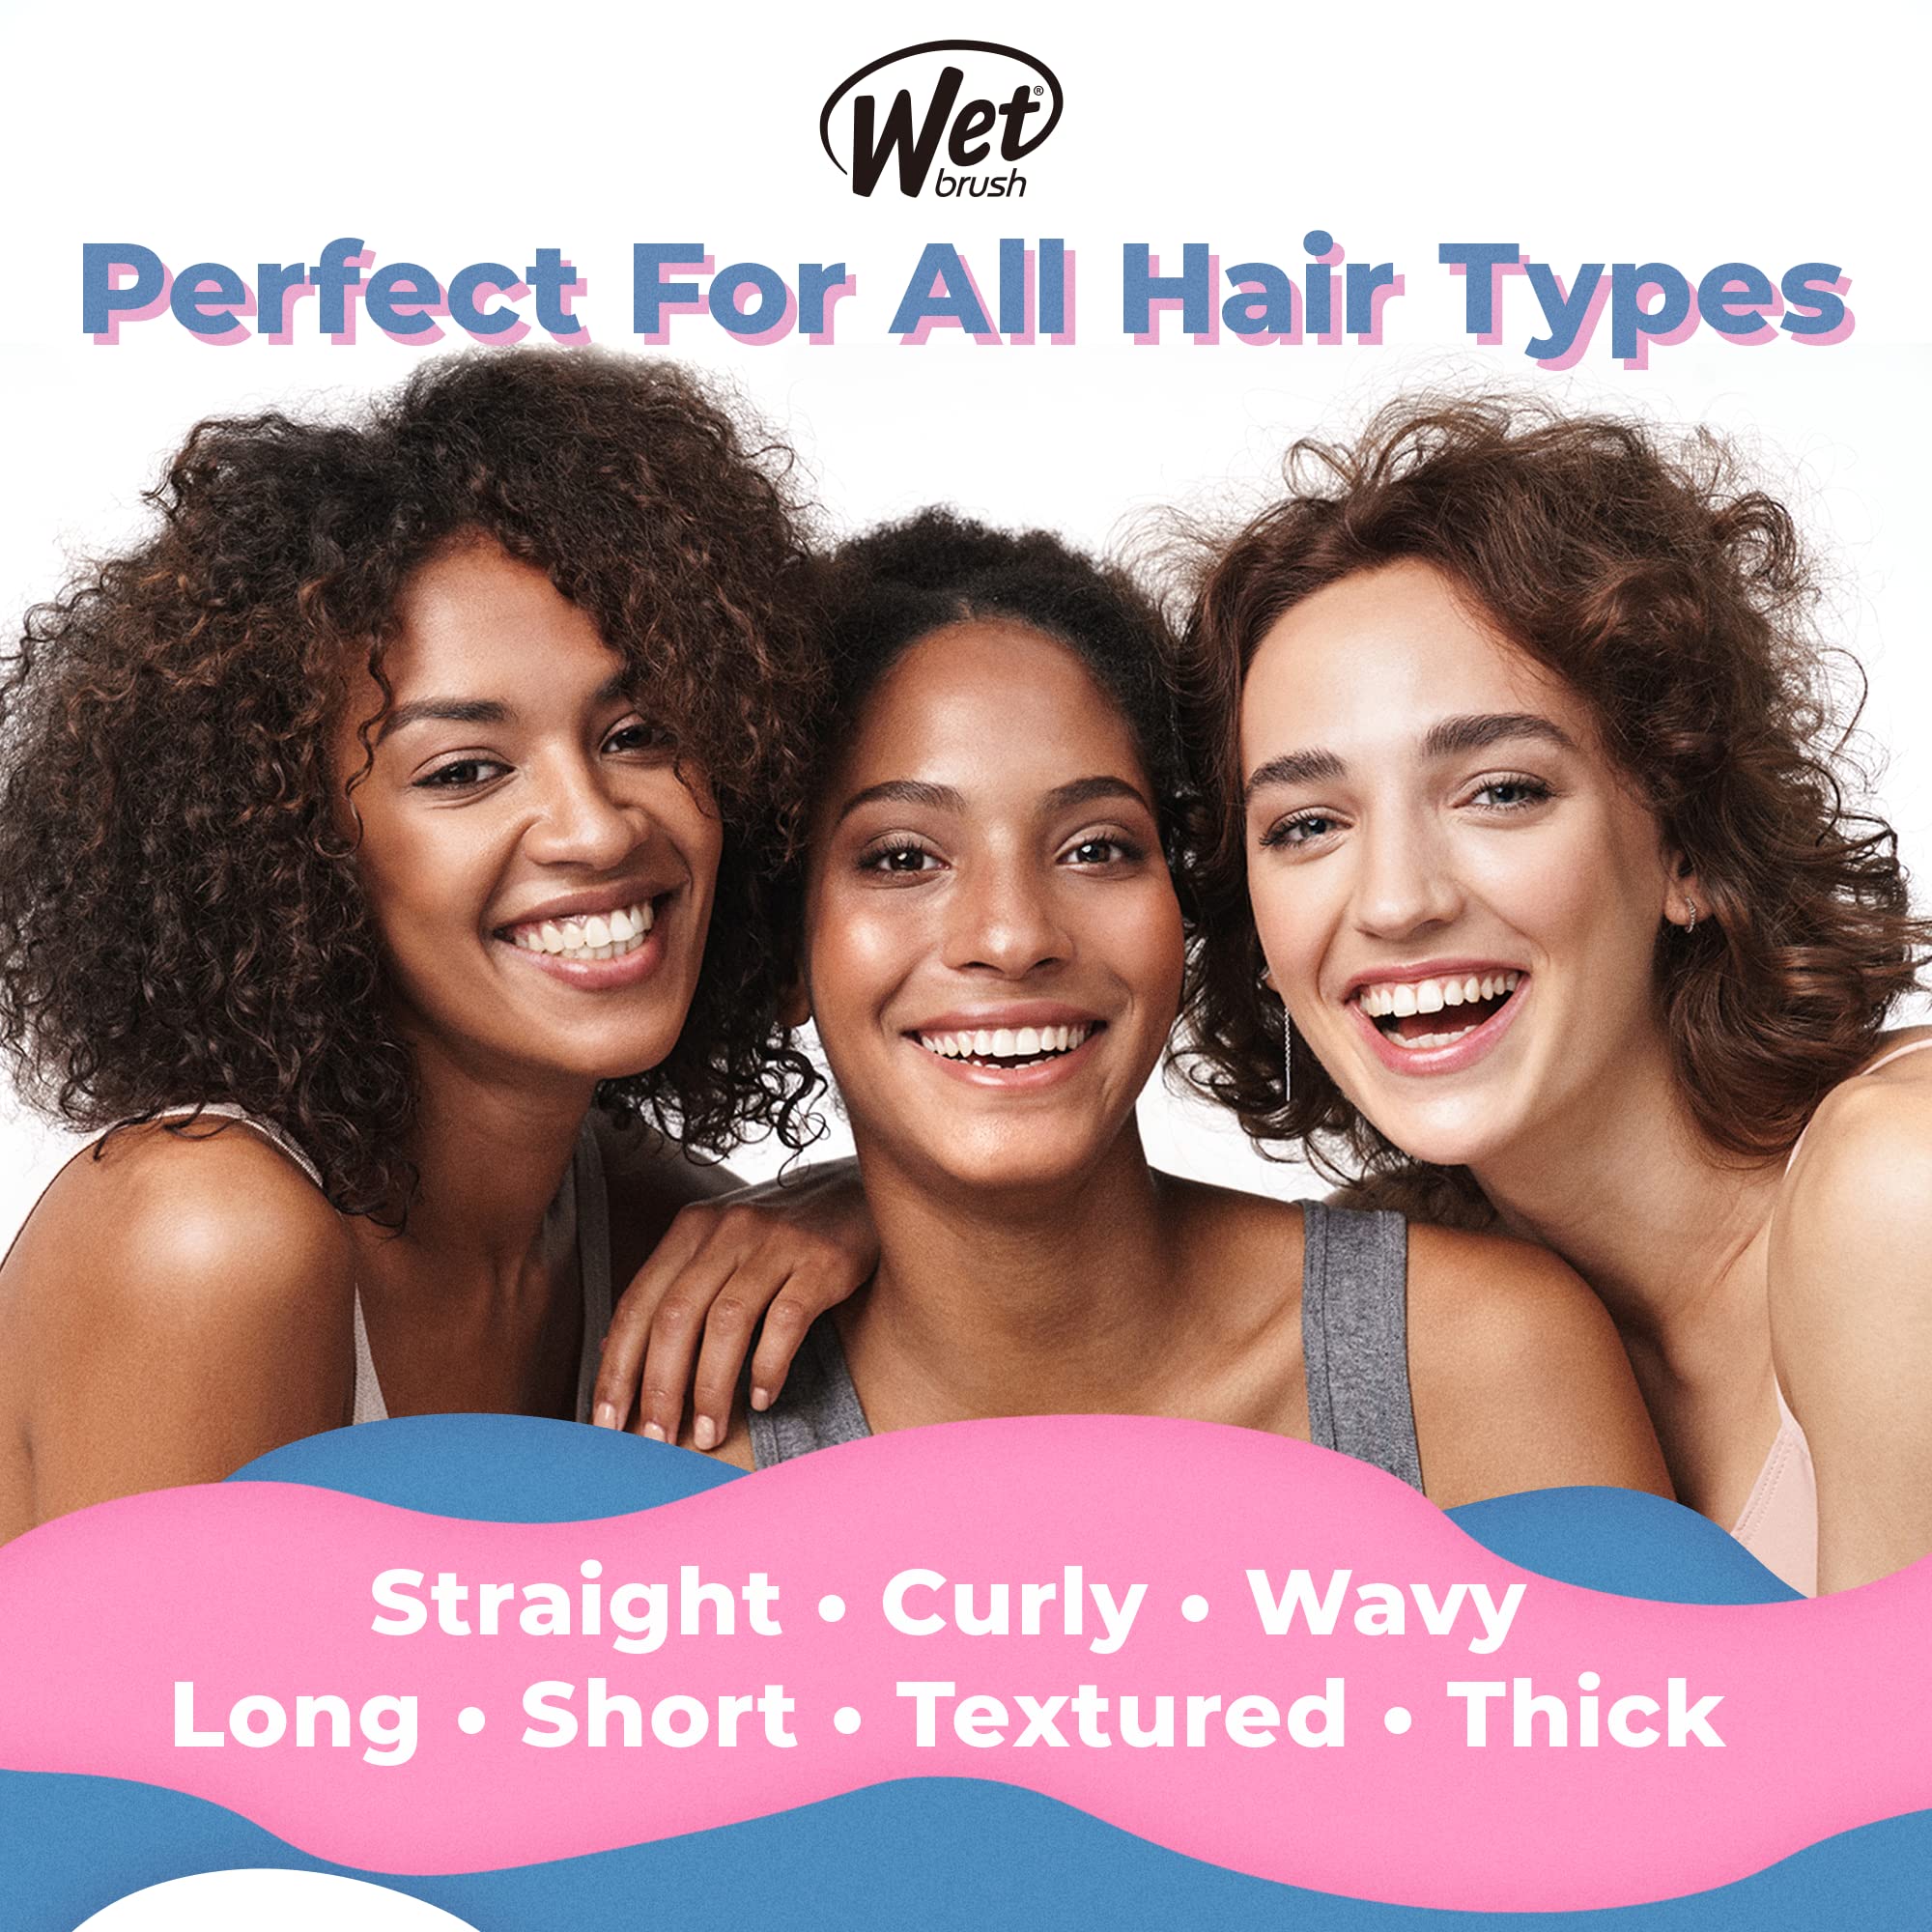 Wet Brush Original Detangler Brush - Bridal Squad - All Hair Types - Ultra-Soft IntelliFlex Bristles Glide Through Tangles with Ease - Pain-Free Comb for Men, Women, Boys & Girls